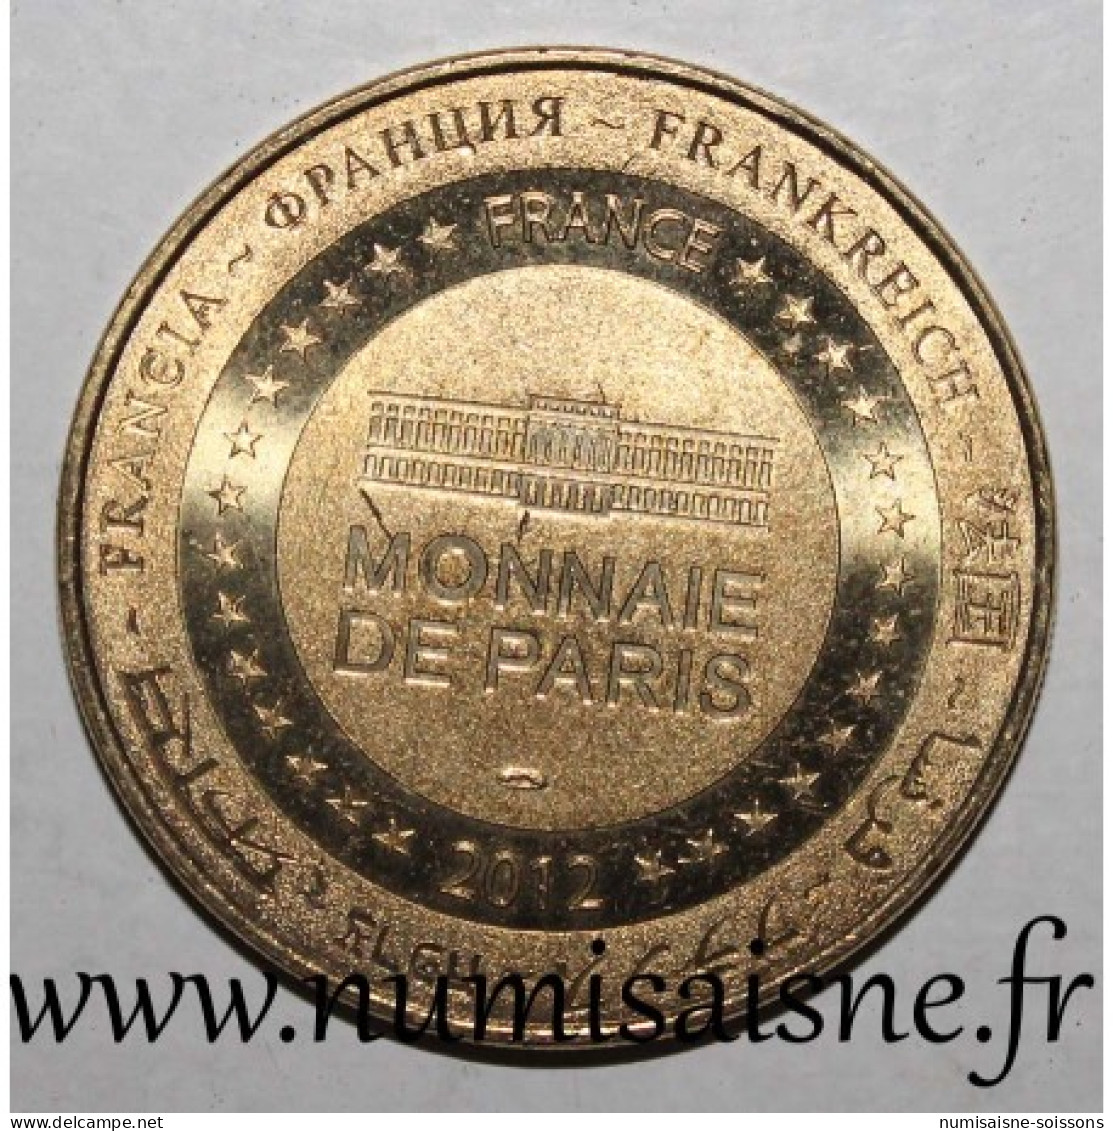 75 - PARIS - BATEAUX PARISIENS - Monnaie De Paris - 2012 - 2012